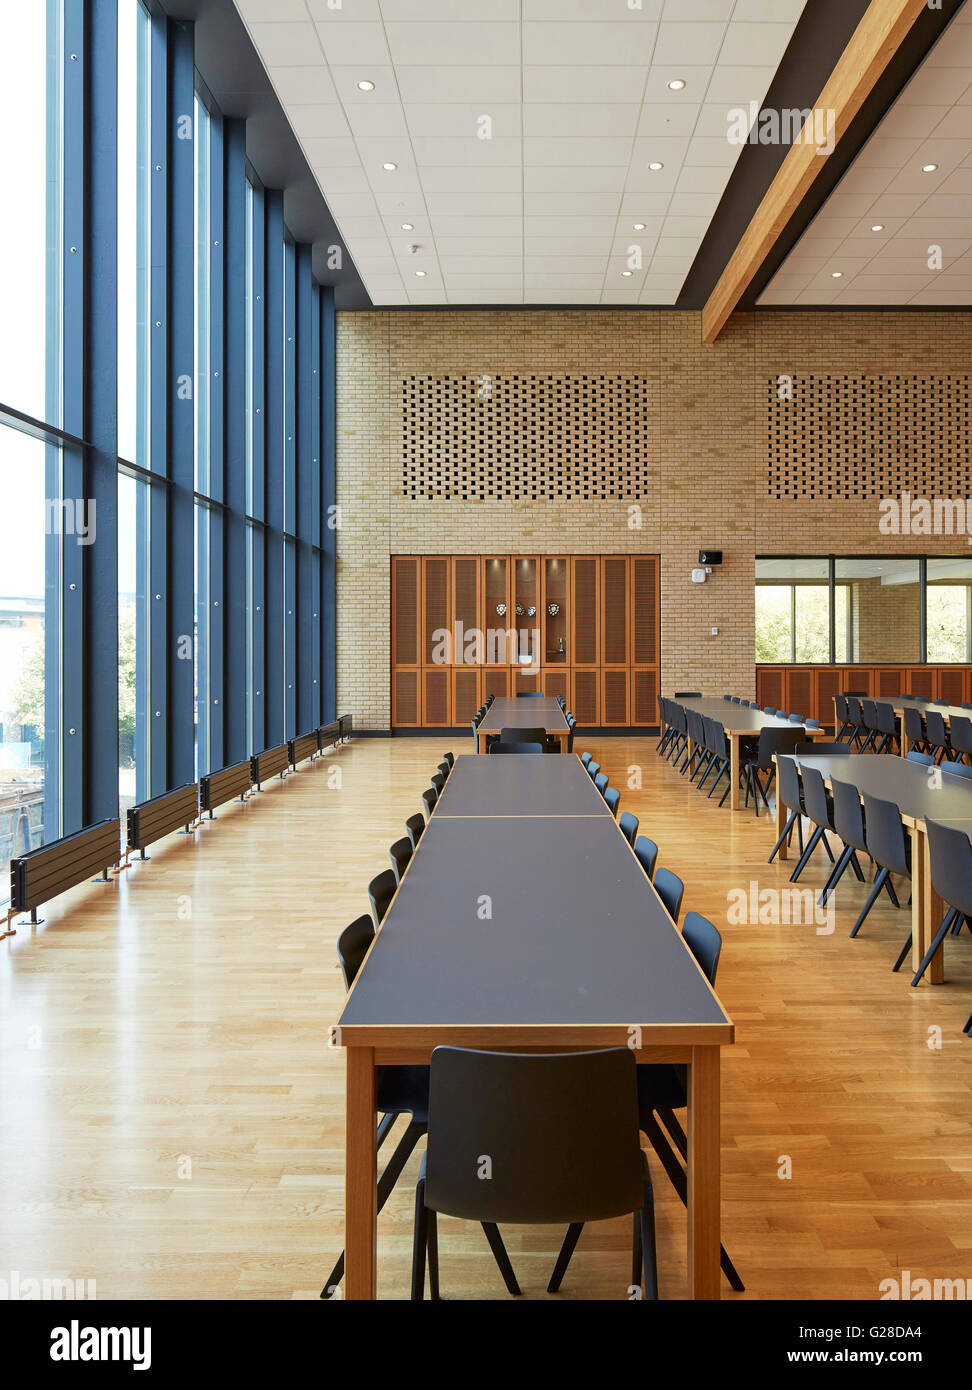 Leeren Speisesaal. Die Scheune, Sutton Bonington Campus, Nottingham, Vereinigtes Königreich. Architekt: Make Ltd, 2015. Stockfoto